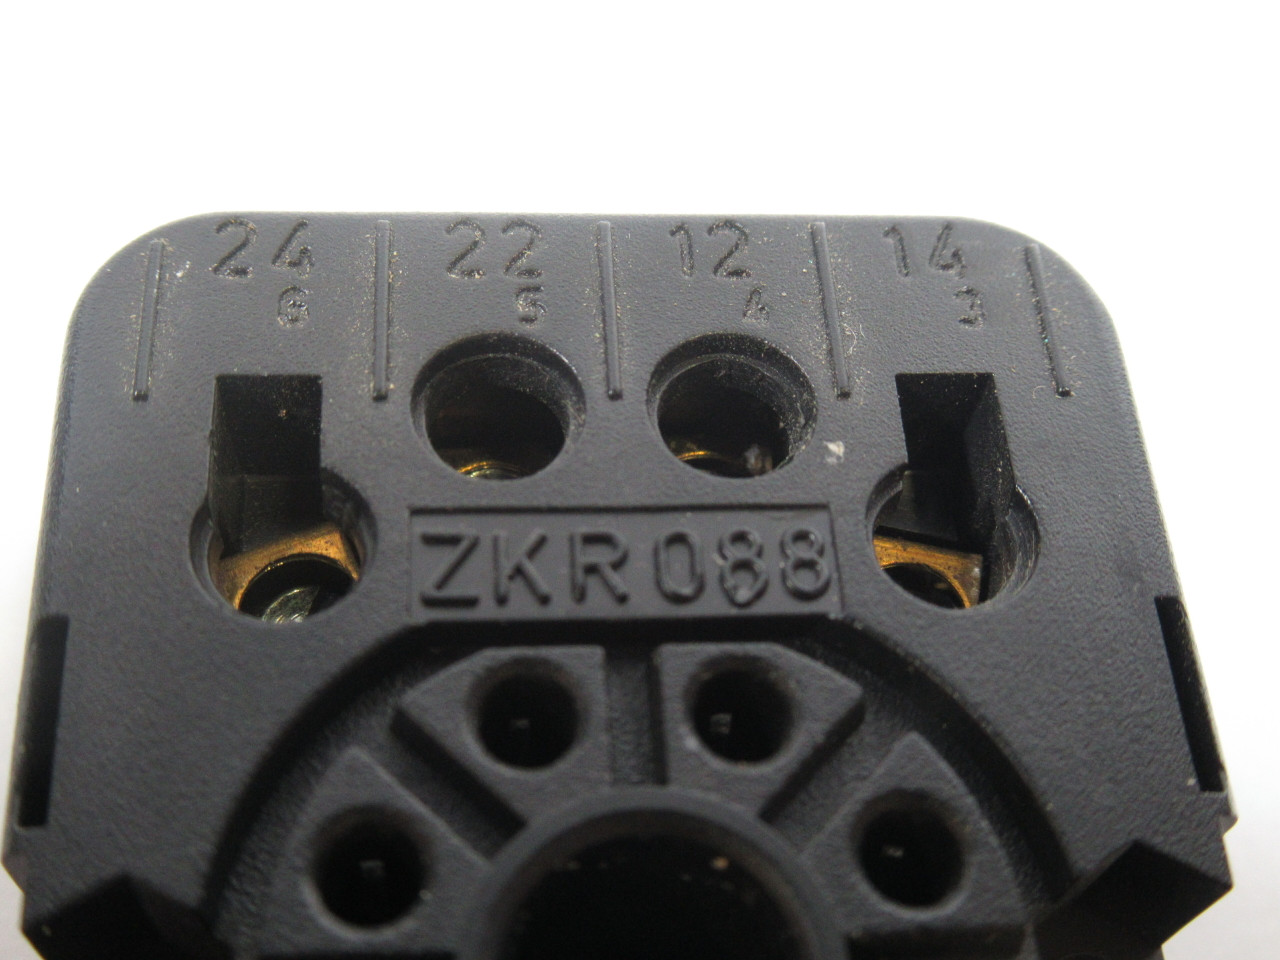 Elesta ZKR088 Relay Base 380V 10A USED